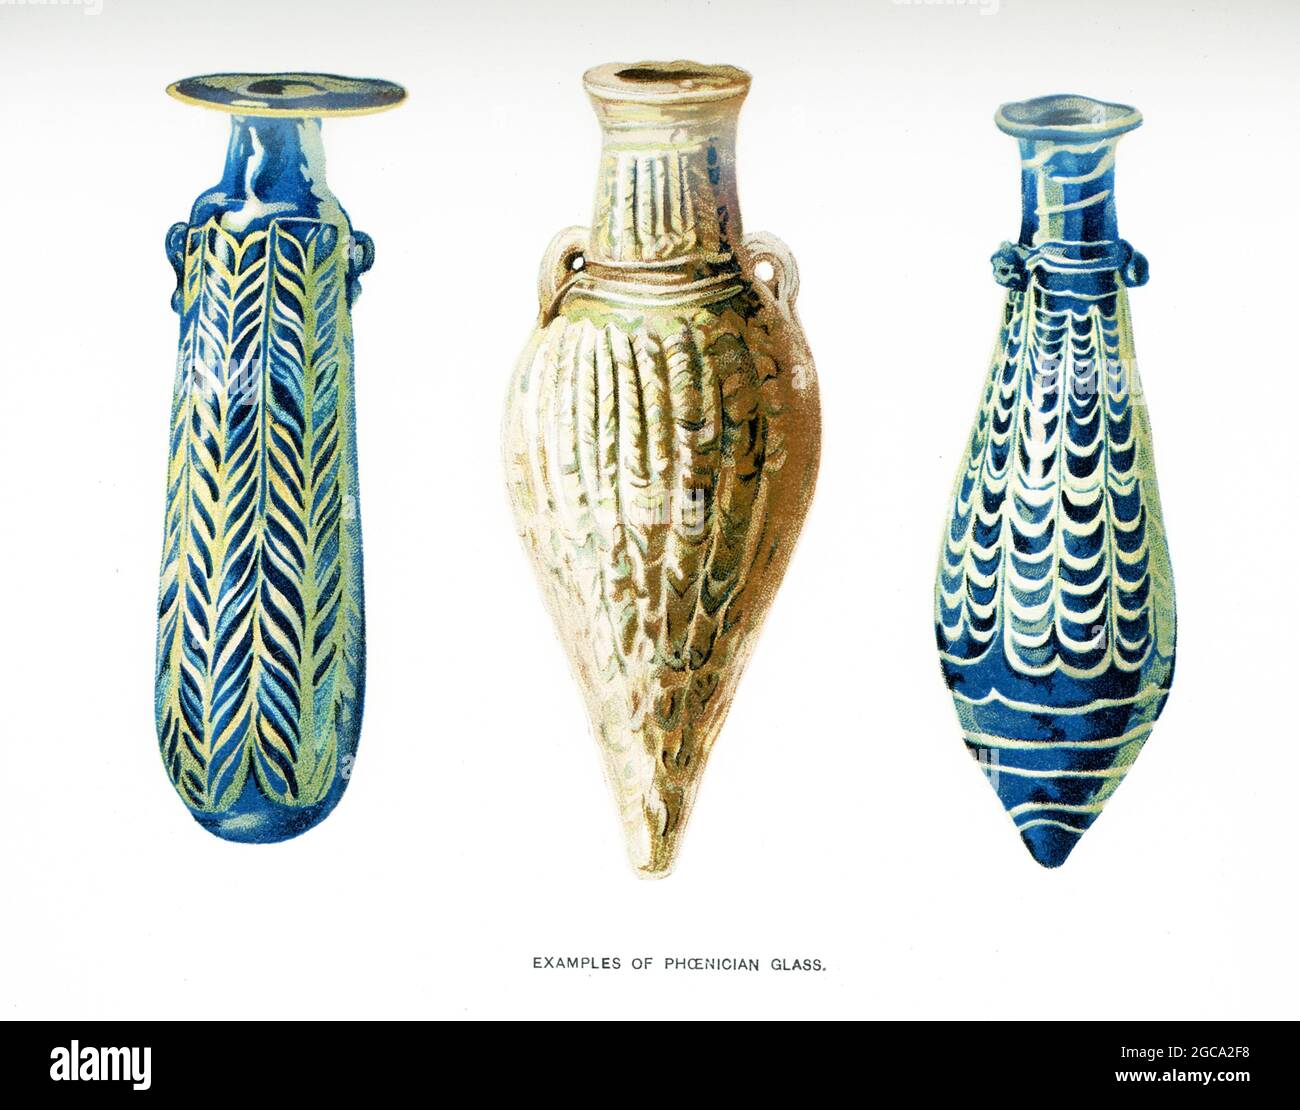 La didascalia che accompagna questa illustrazione del 1903 nel libro di Gaston Maspero sulla storia dell'Egitto recita: "Esempi di vetro fenicio". Foto Stock